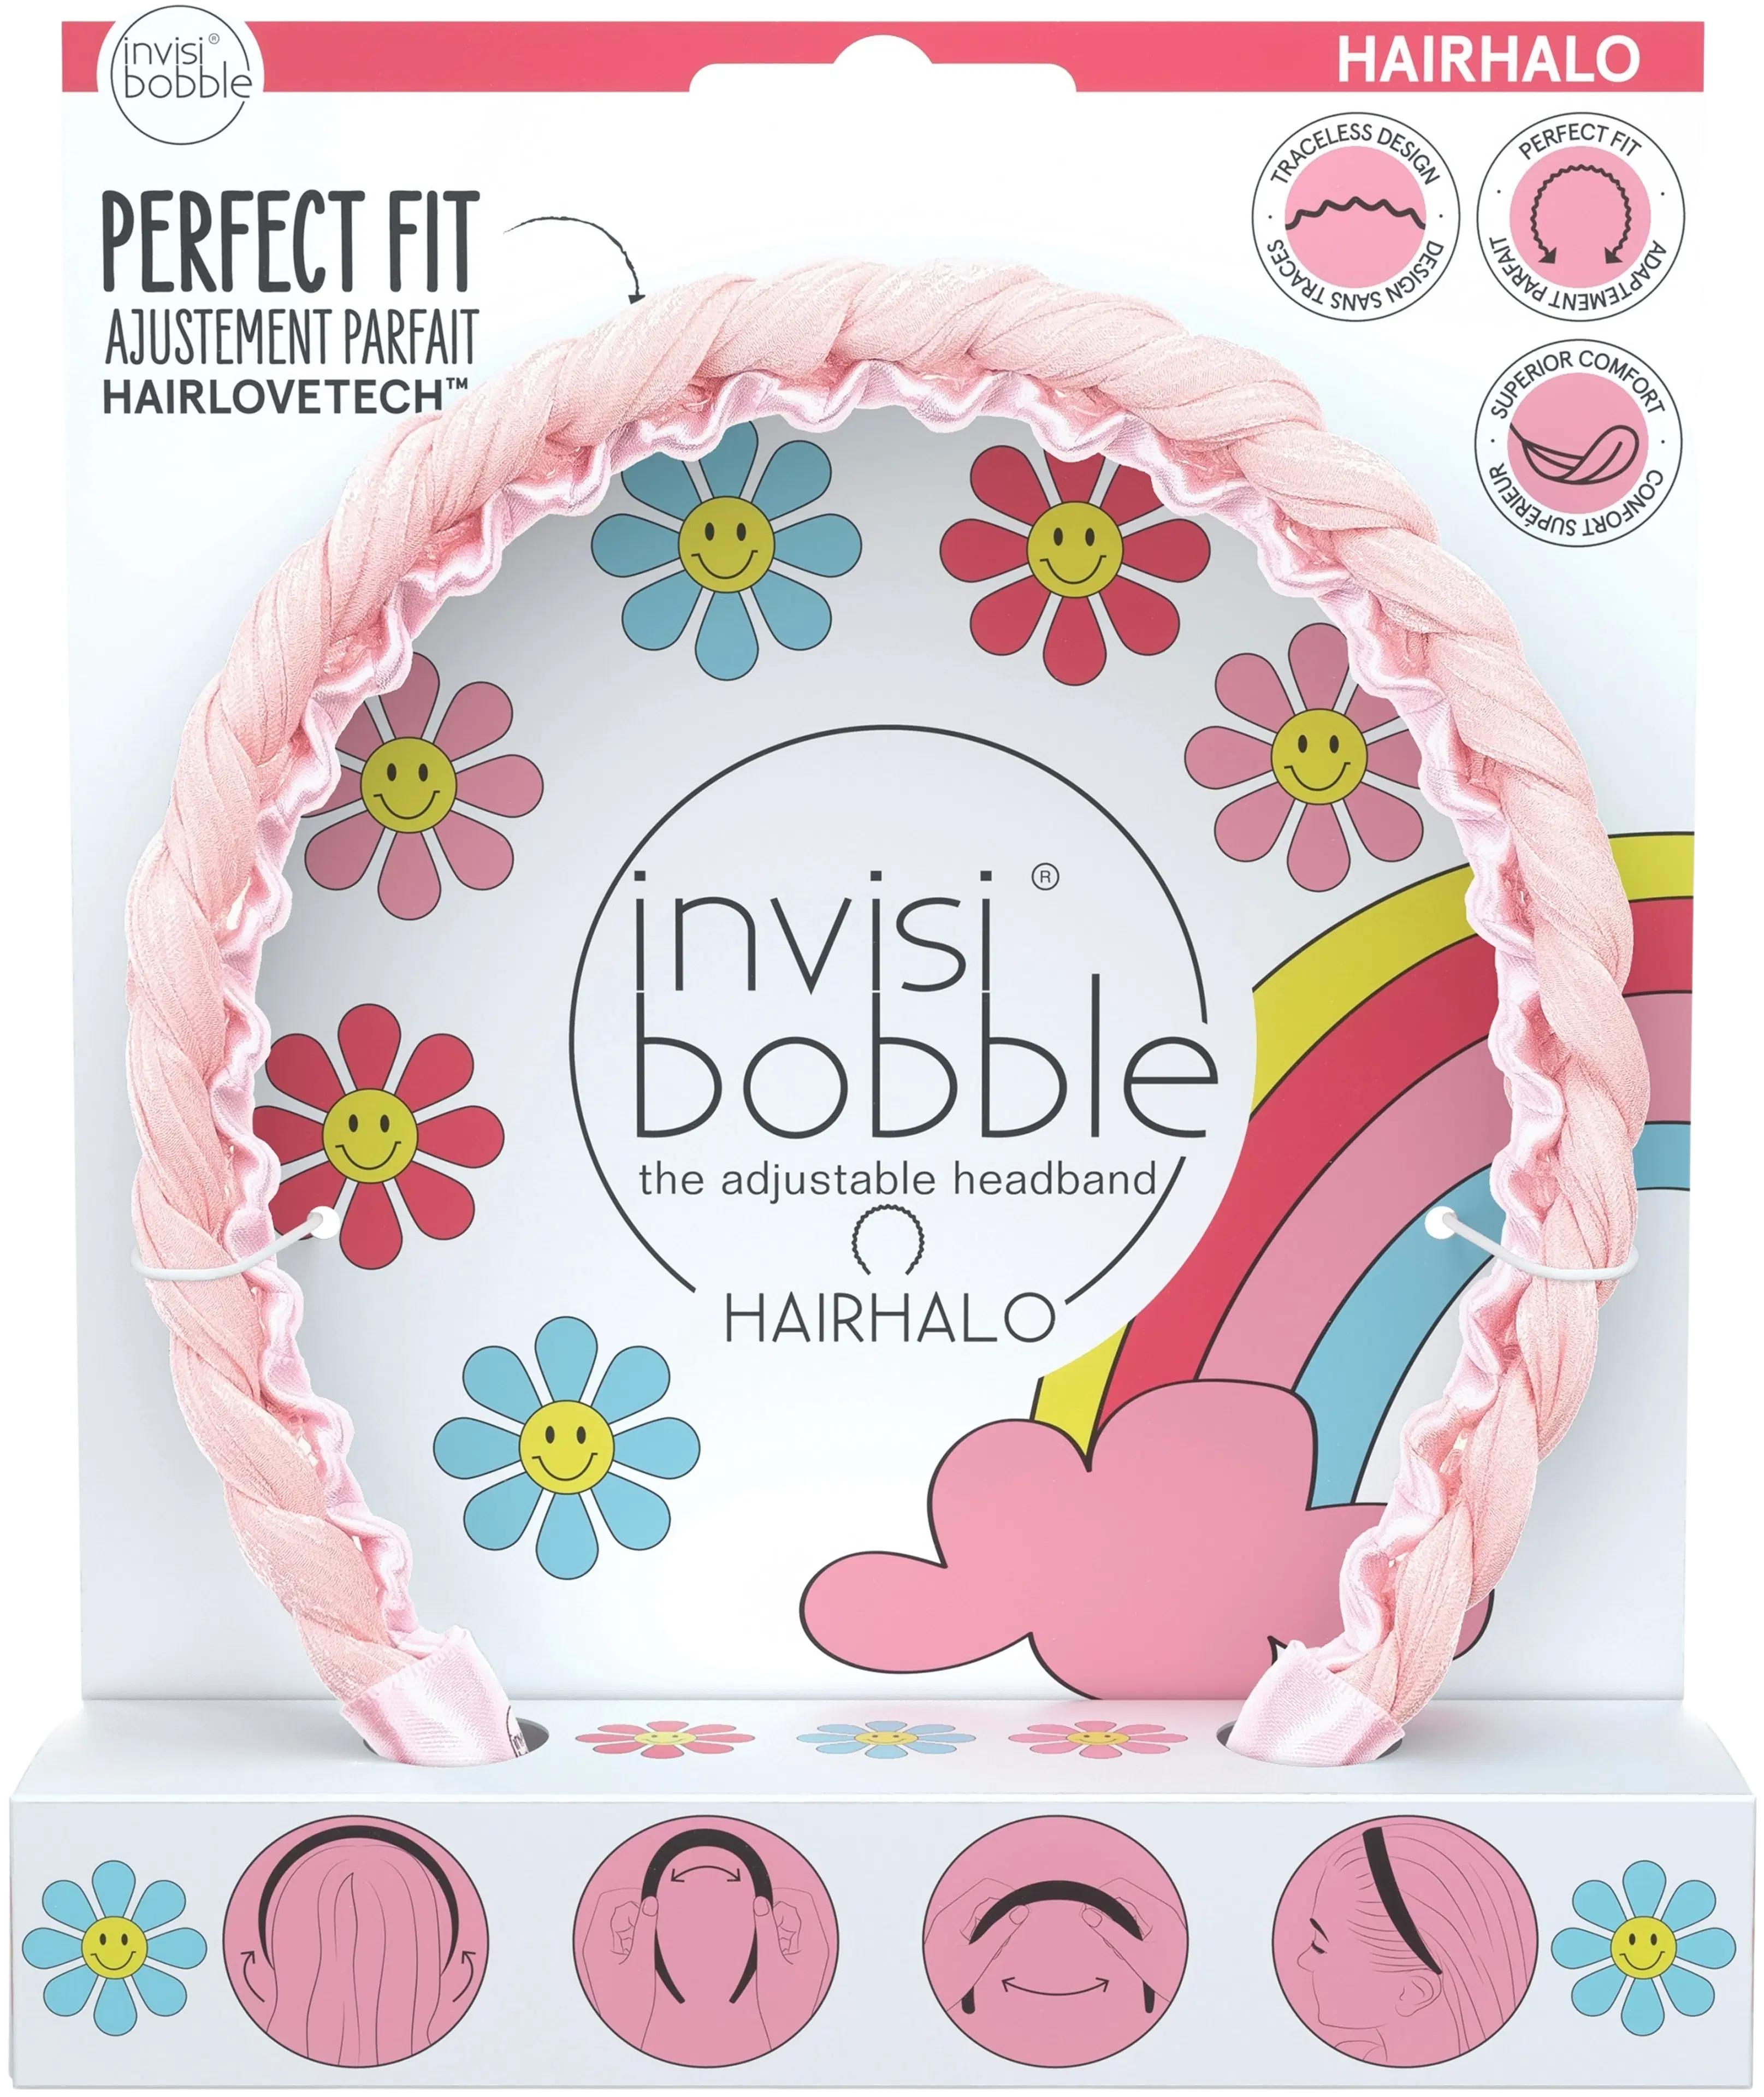 invisibobble HAIRHALO Retro Dreamin‘ Eat, Pink, and be Merry säädettävä hiuspanta